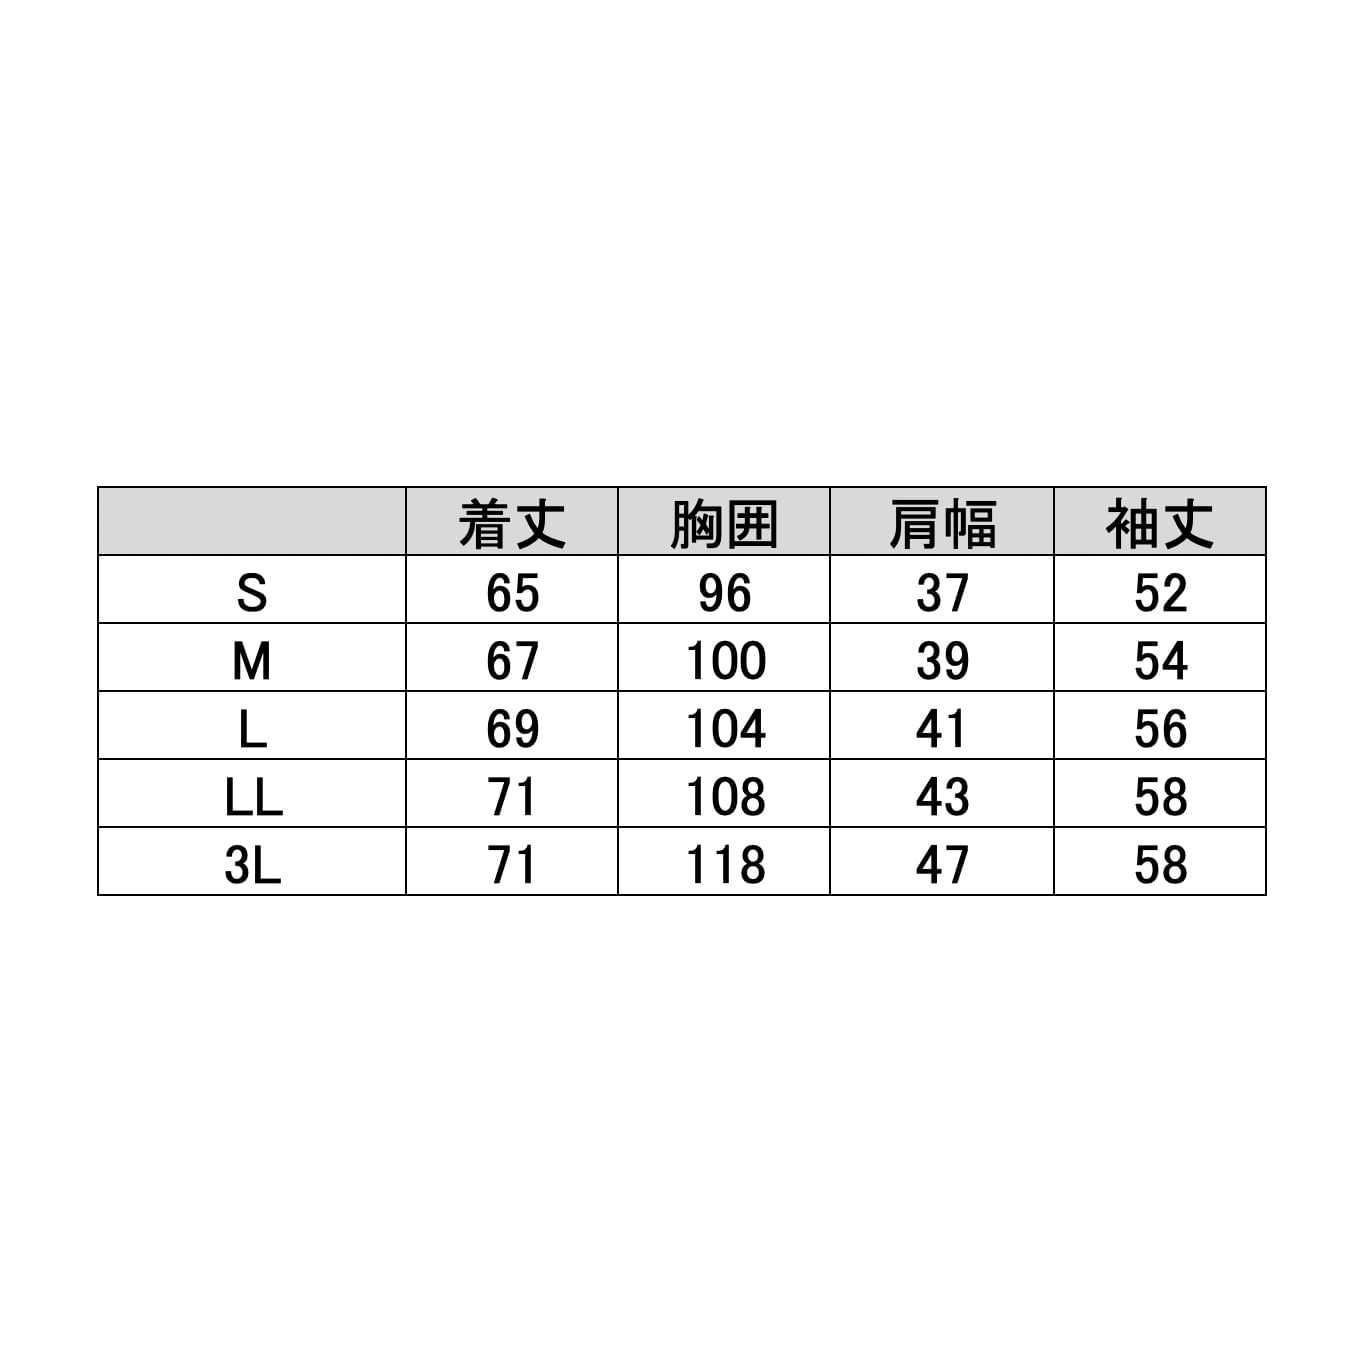 (23-7836-01)カーディガン（ロング丈） C-10(M) ｶｰﾃﾞｨｶﾞﾝﾛﾝｸﾞﾀｹ ピンク×ホワイト【1枚単位】【2019年カタログ商品】